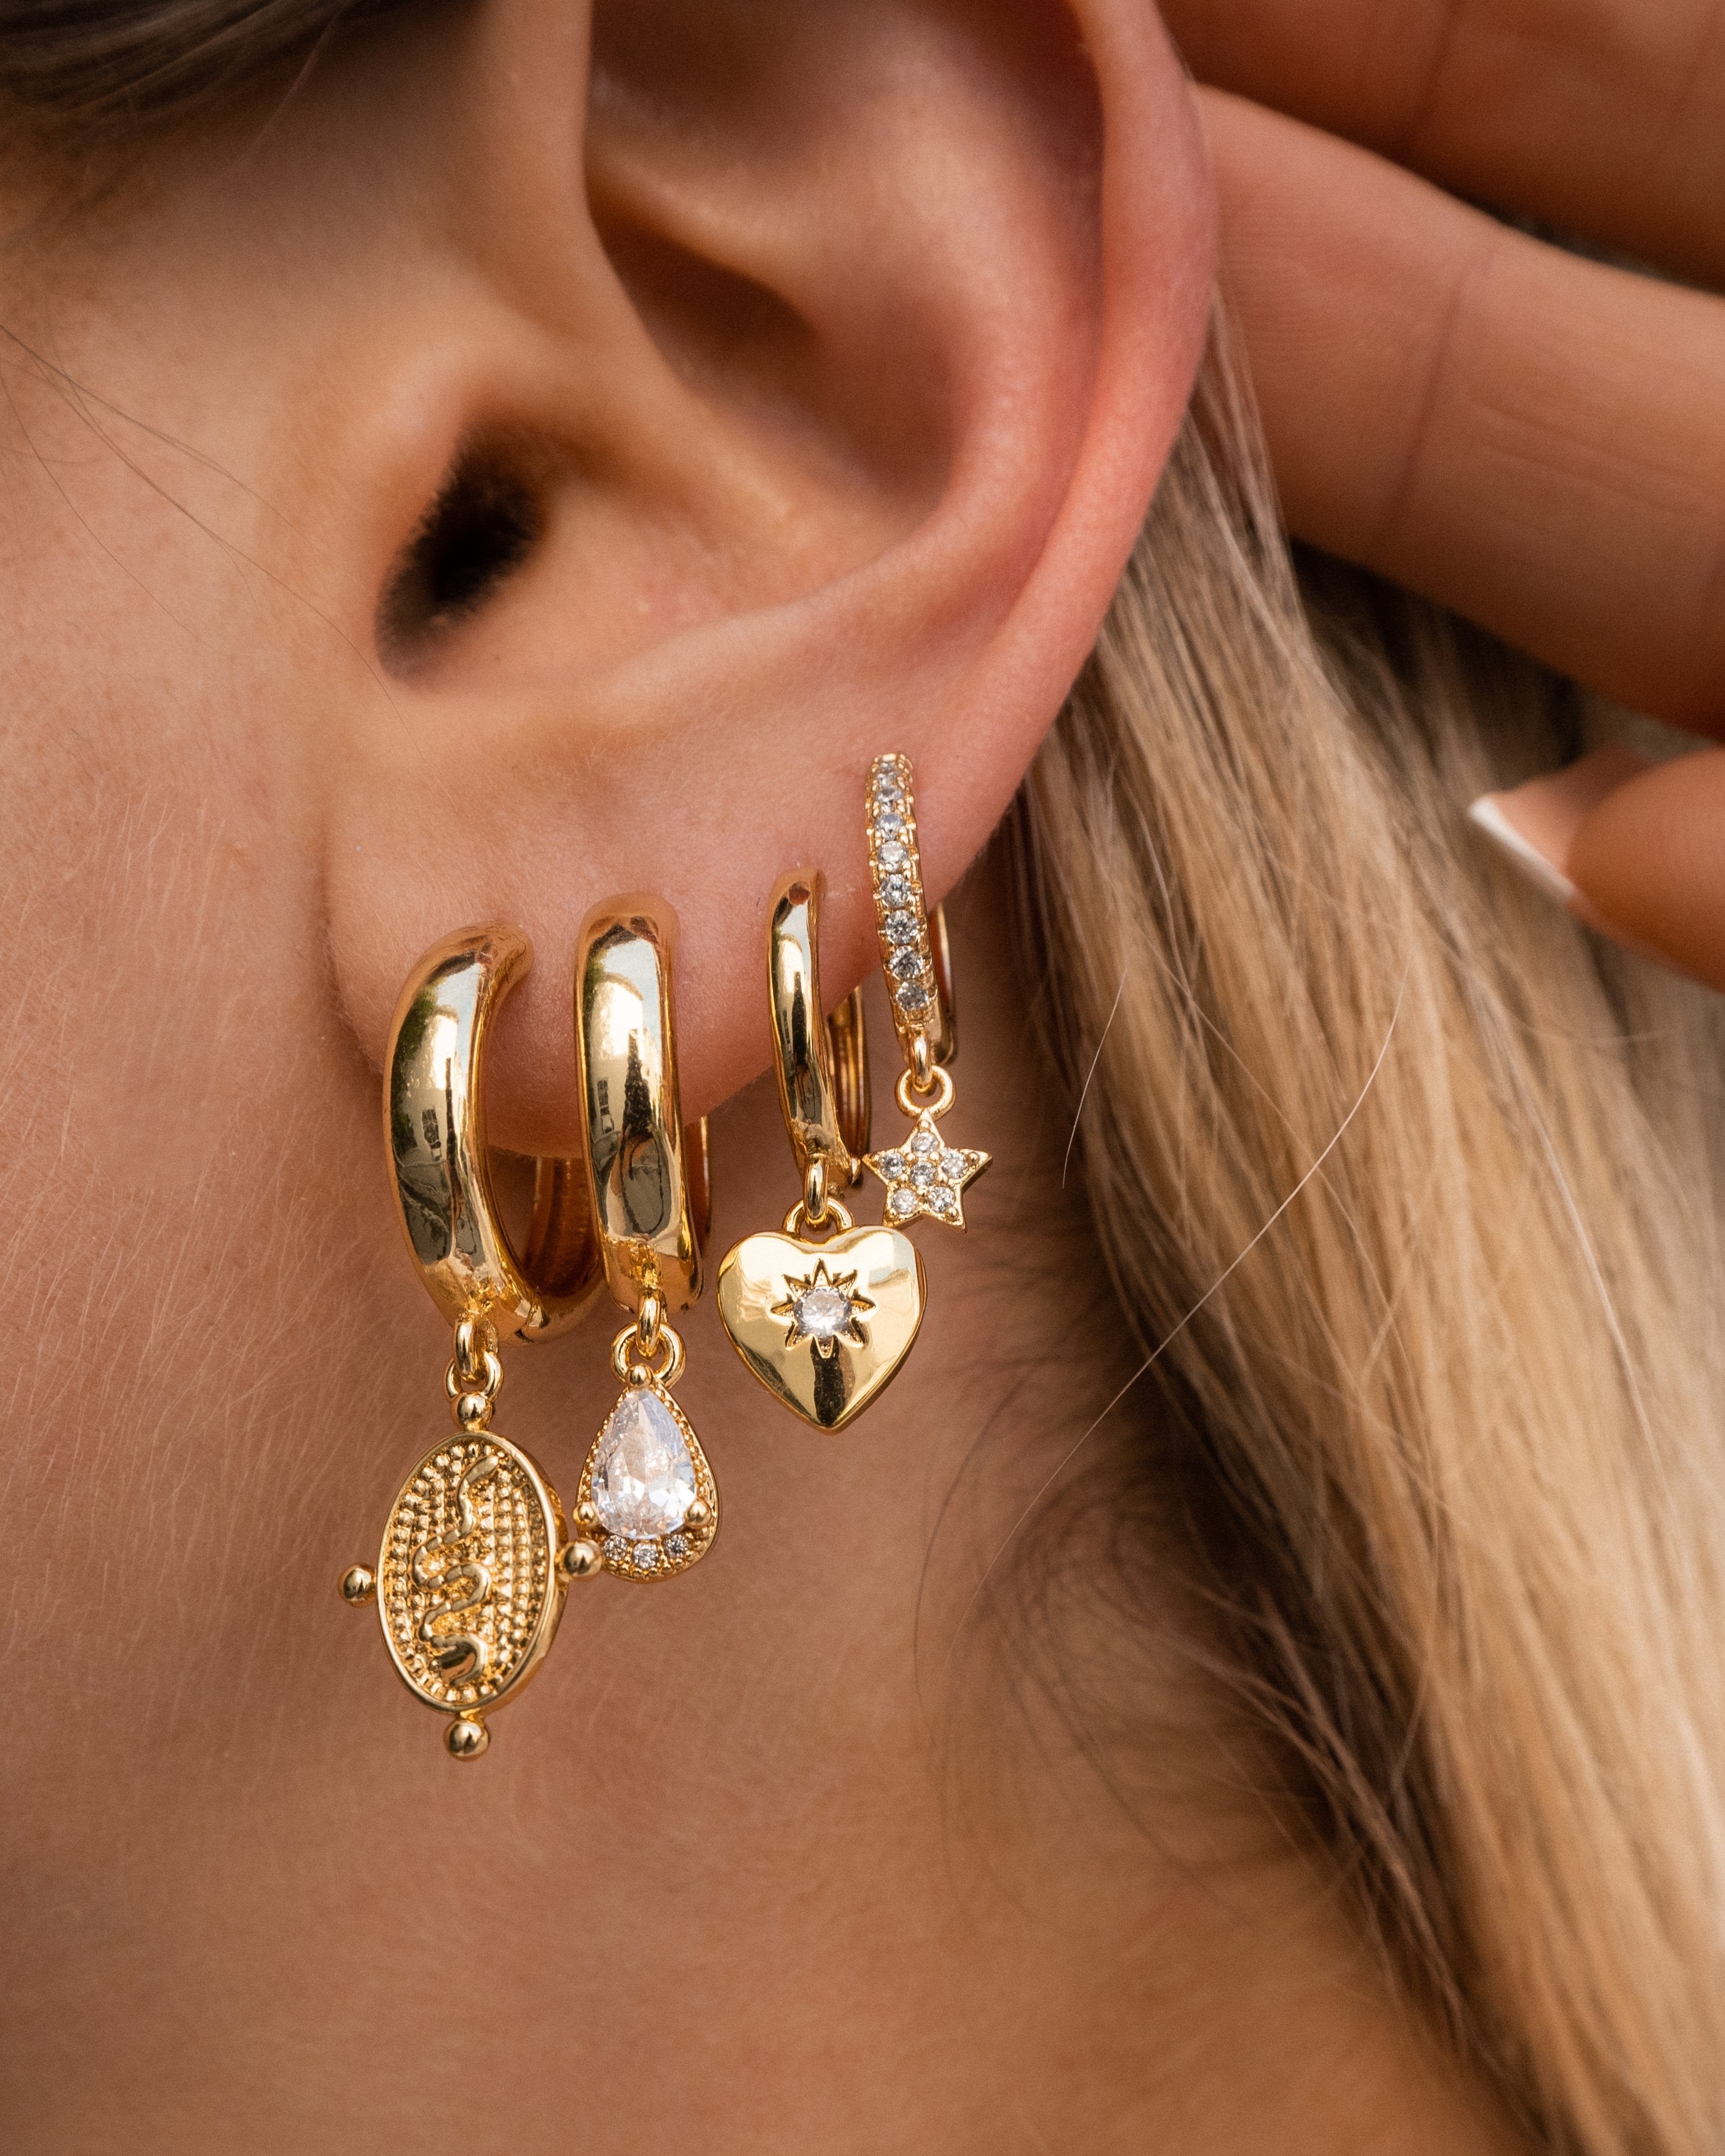 Michelle earrings